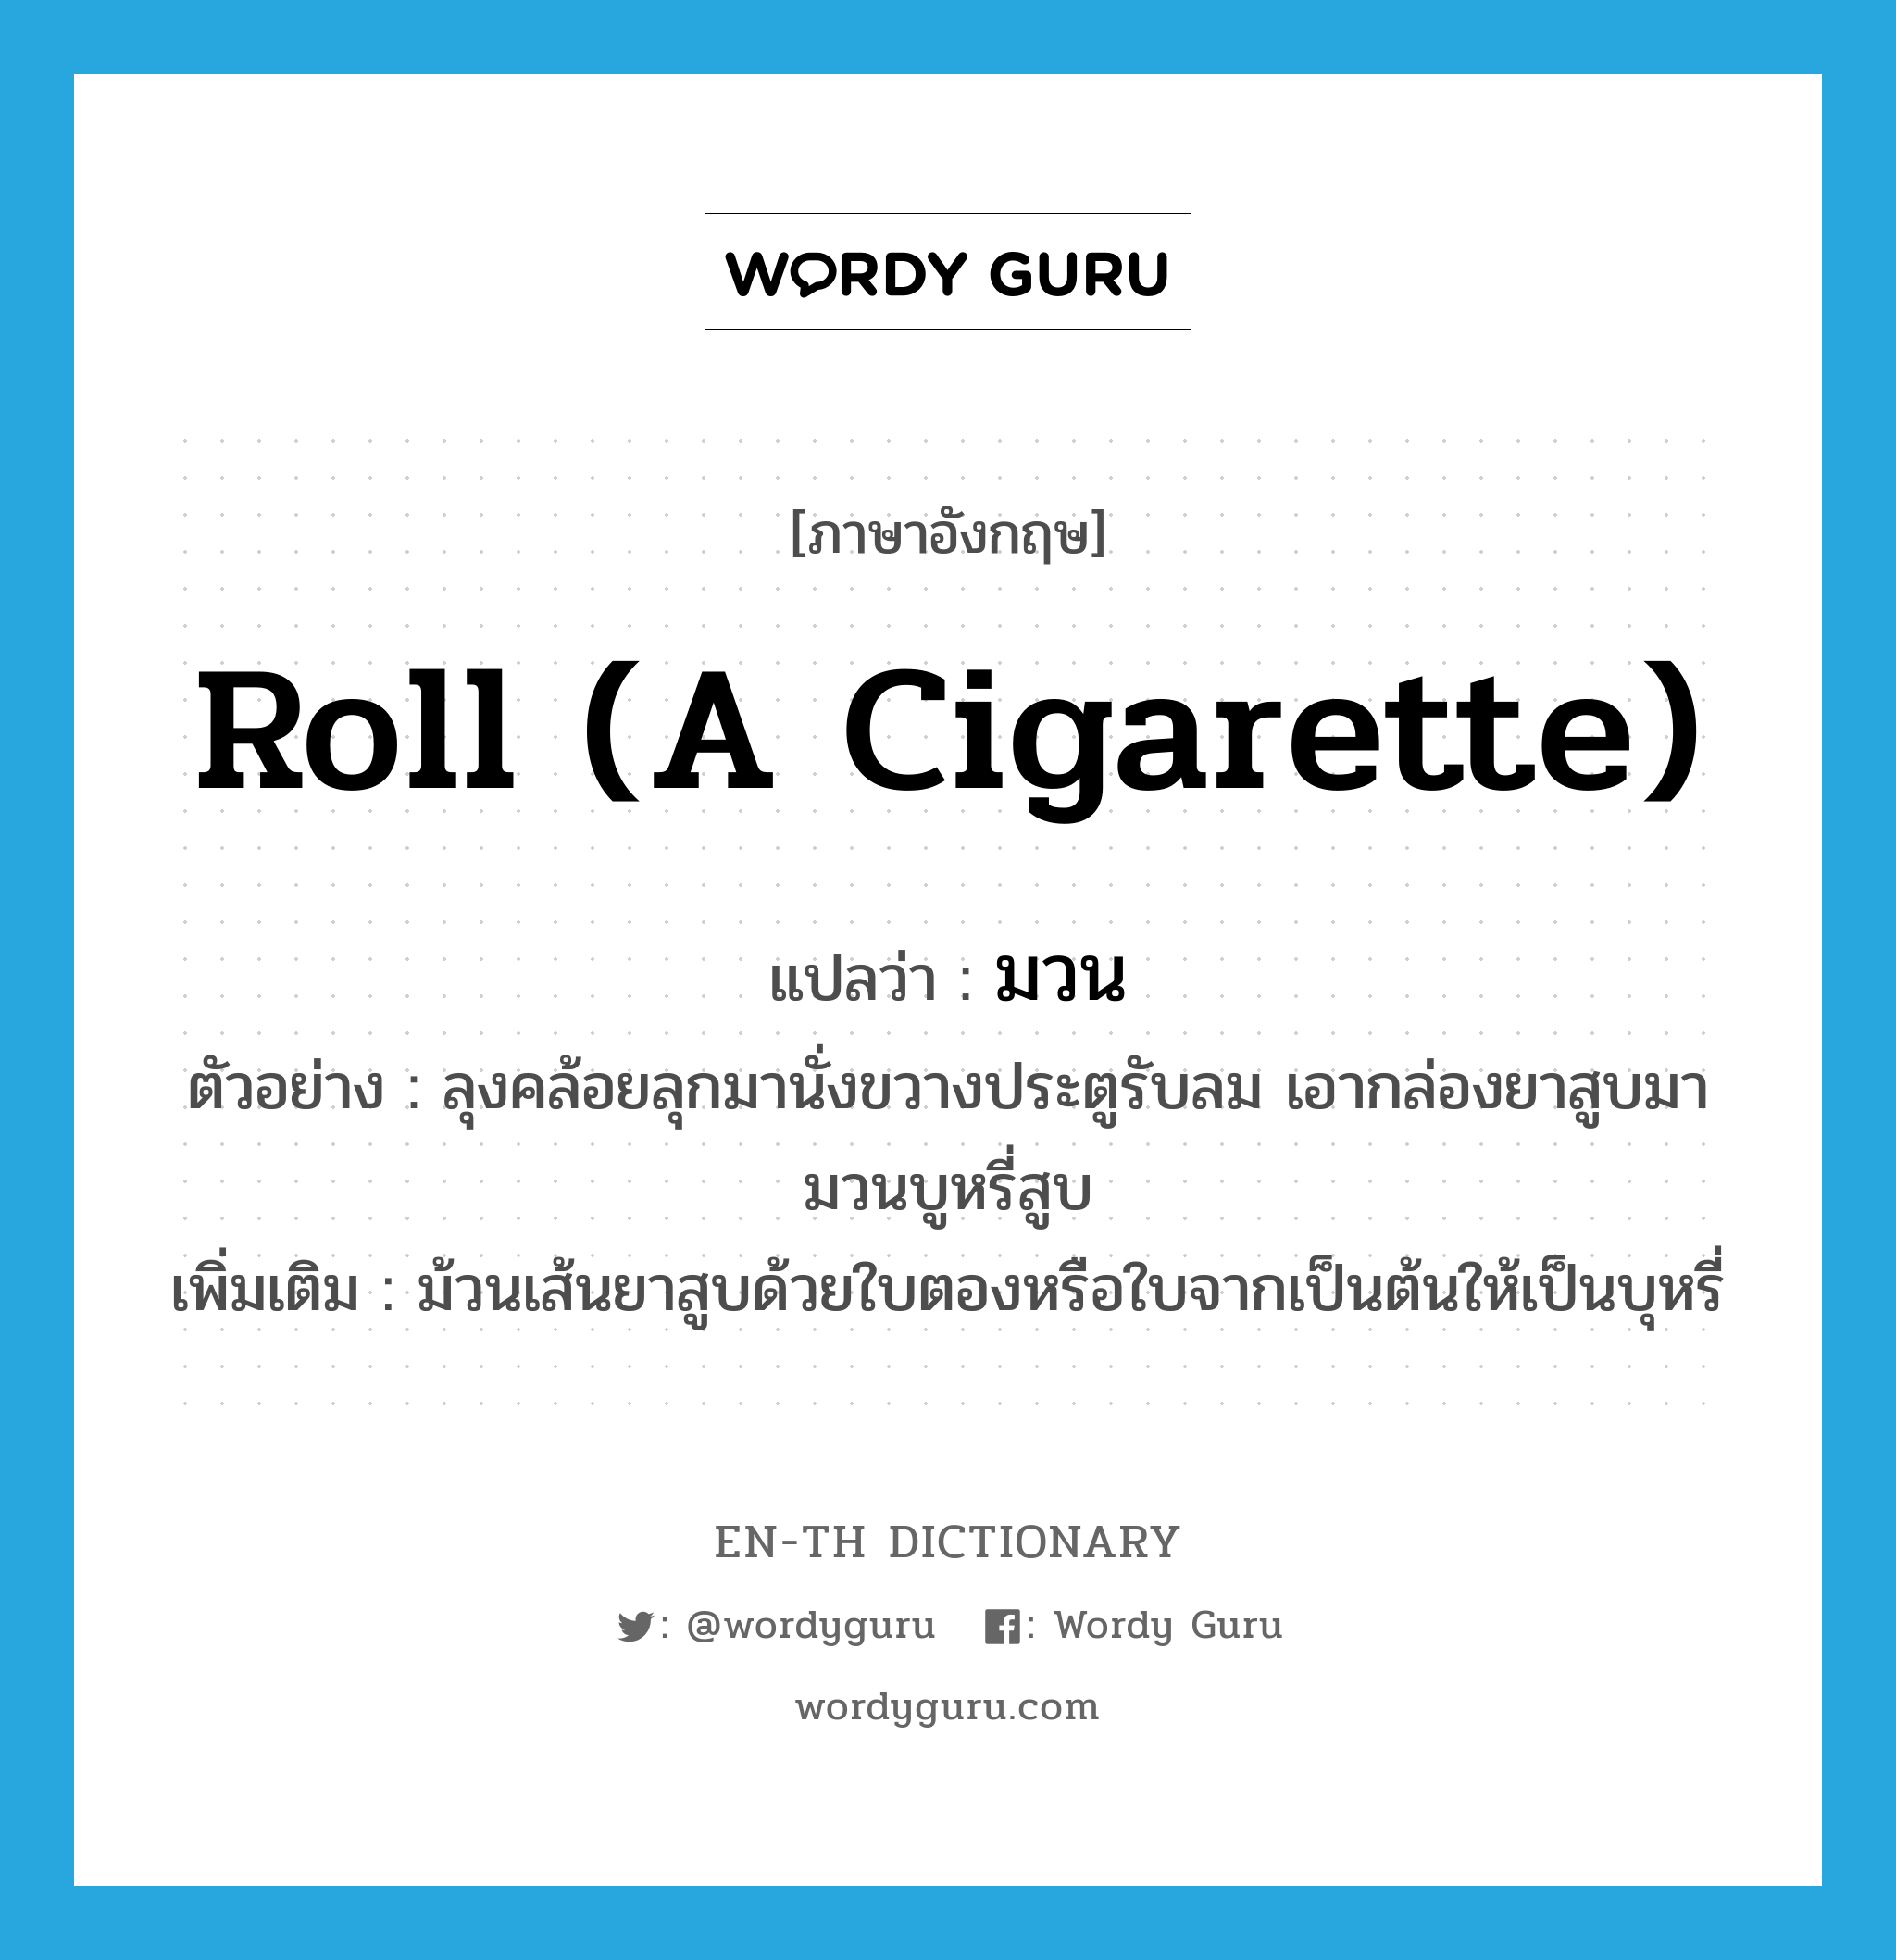 มวน ภาษาอังกฤษ?, คำศัพท์ภาษาอังกฤษ มวน แปลว่า roll (a cigarette) ประเภท V ตัวอย่าง ลุงคล้อยลุกมานั่งขวางประตูรับลม เอากล่องยาสูบมามวนบูหรี่สูบ เพิ่มเติม ม้วนเส้นยาสูบด้วยใบตองหรือใบจากเป็นต้นให้เป็นบุหรี่ หมวด V